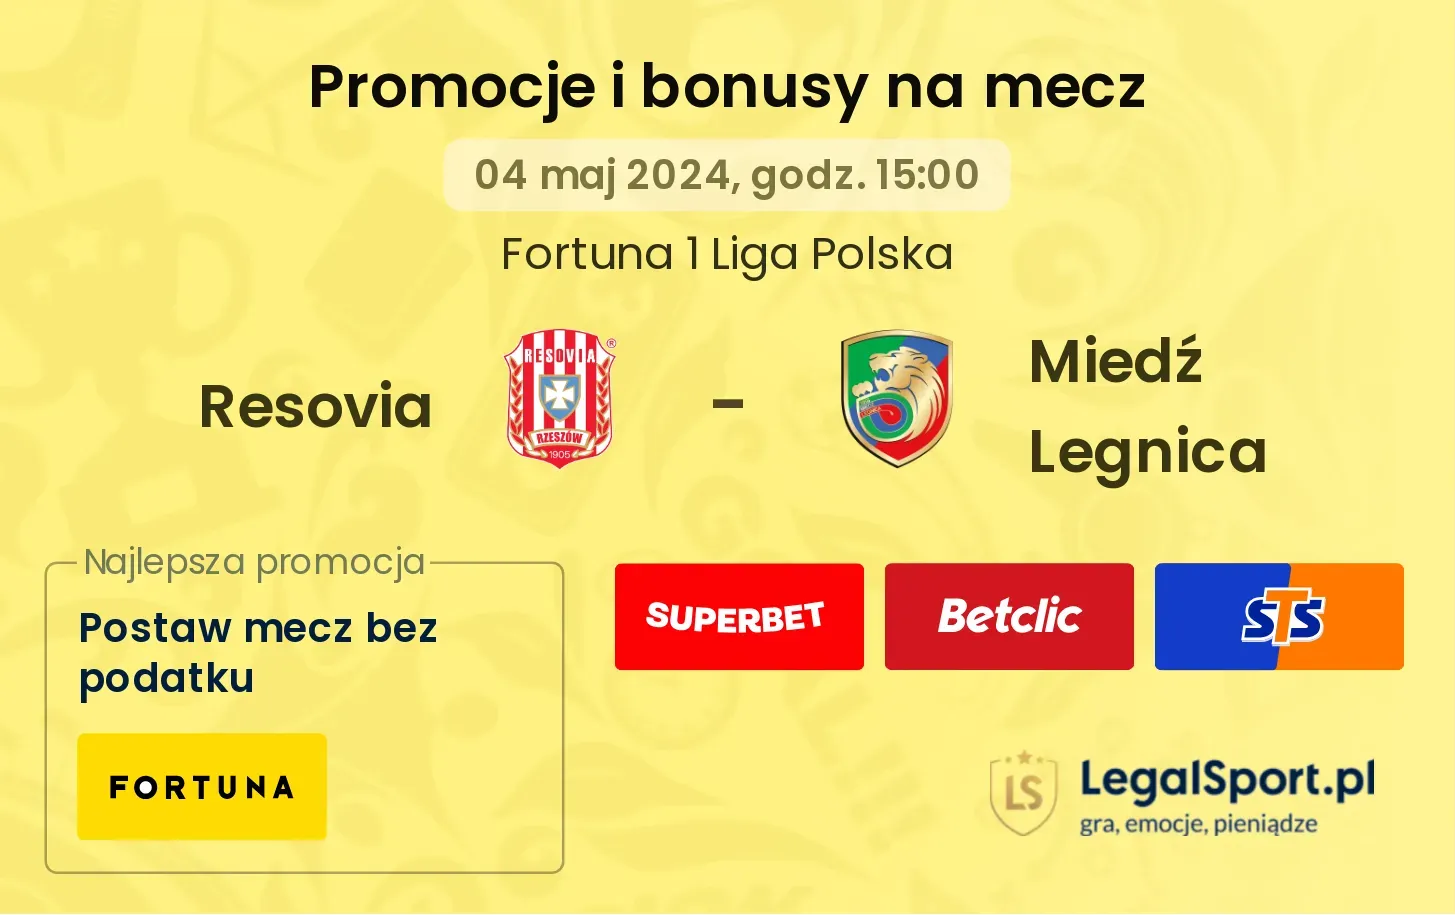 Resovia - Miedź Legnica promocje bonusy na mecz